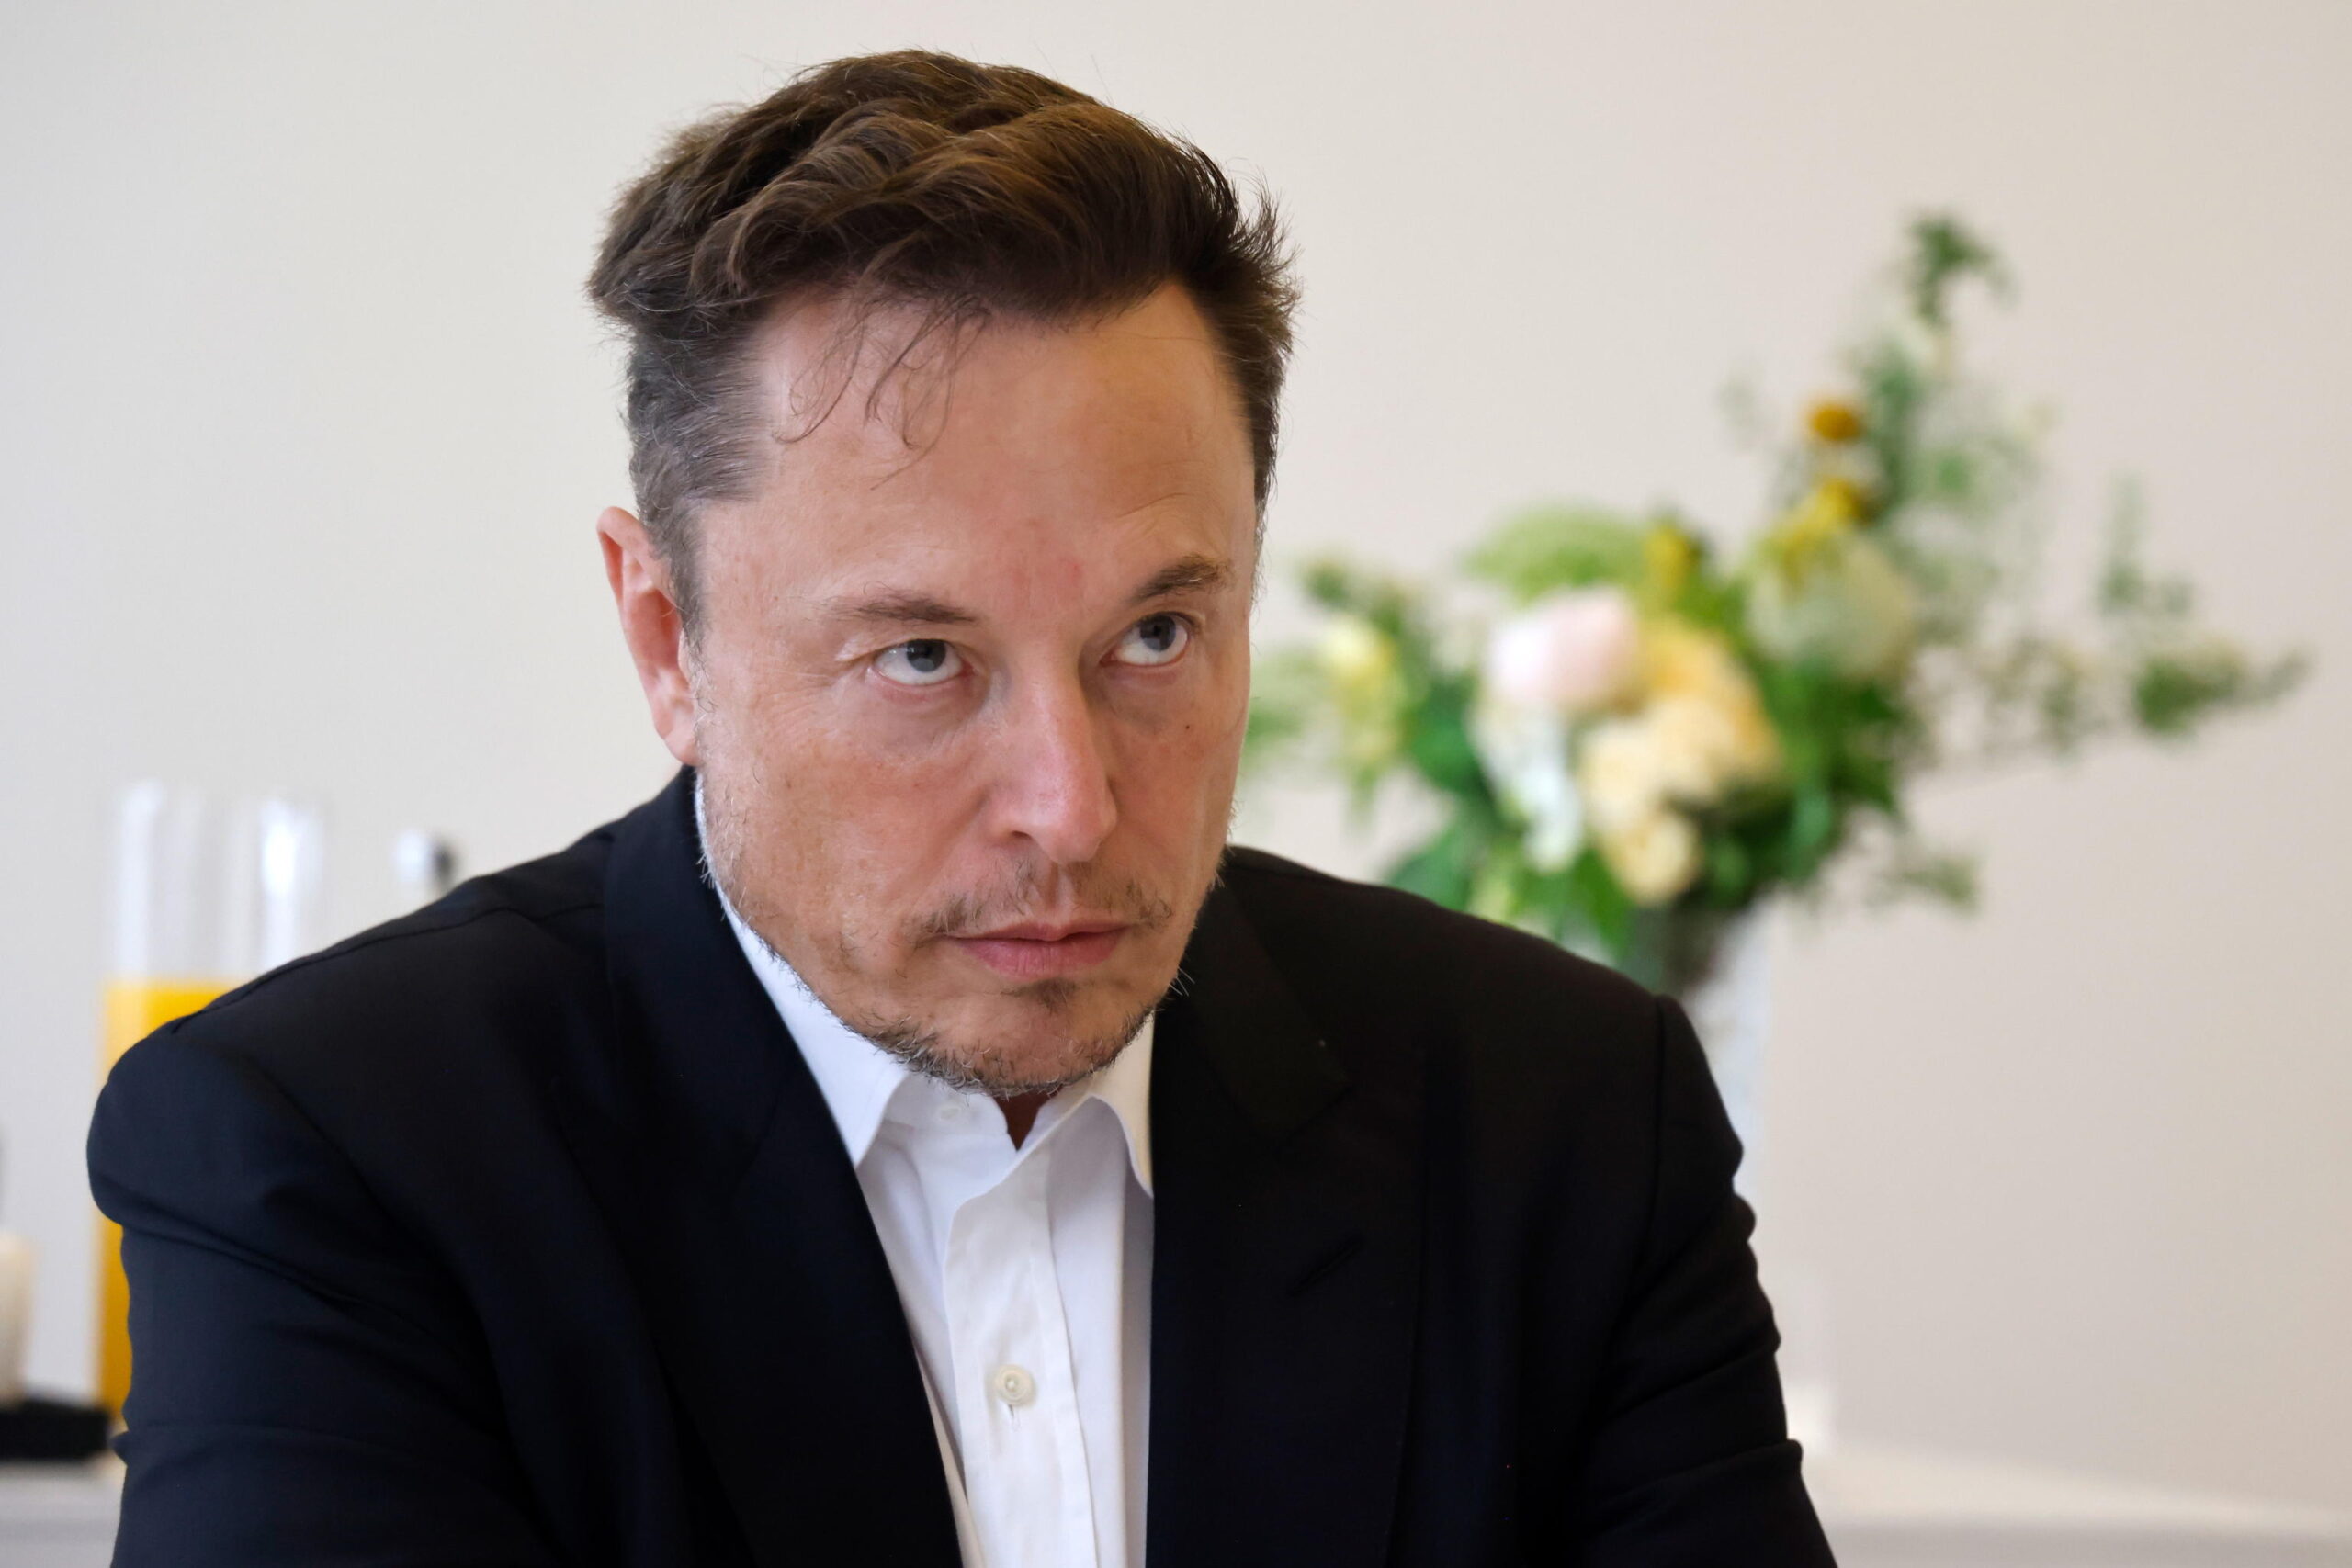 Twitter: la SEC cita in giudizio Elon Musk per costringerlo a testimoniare nell’indagine